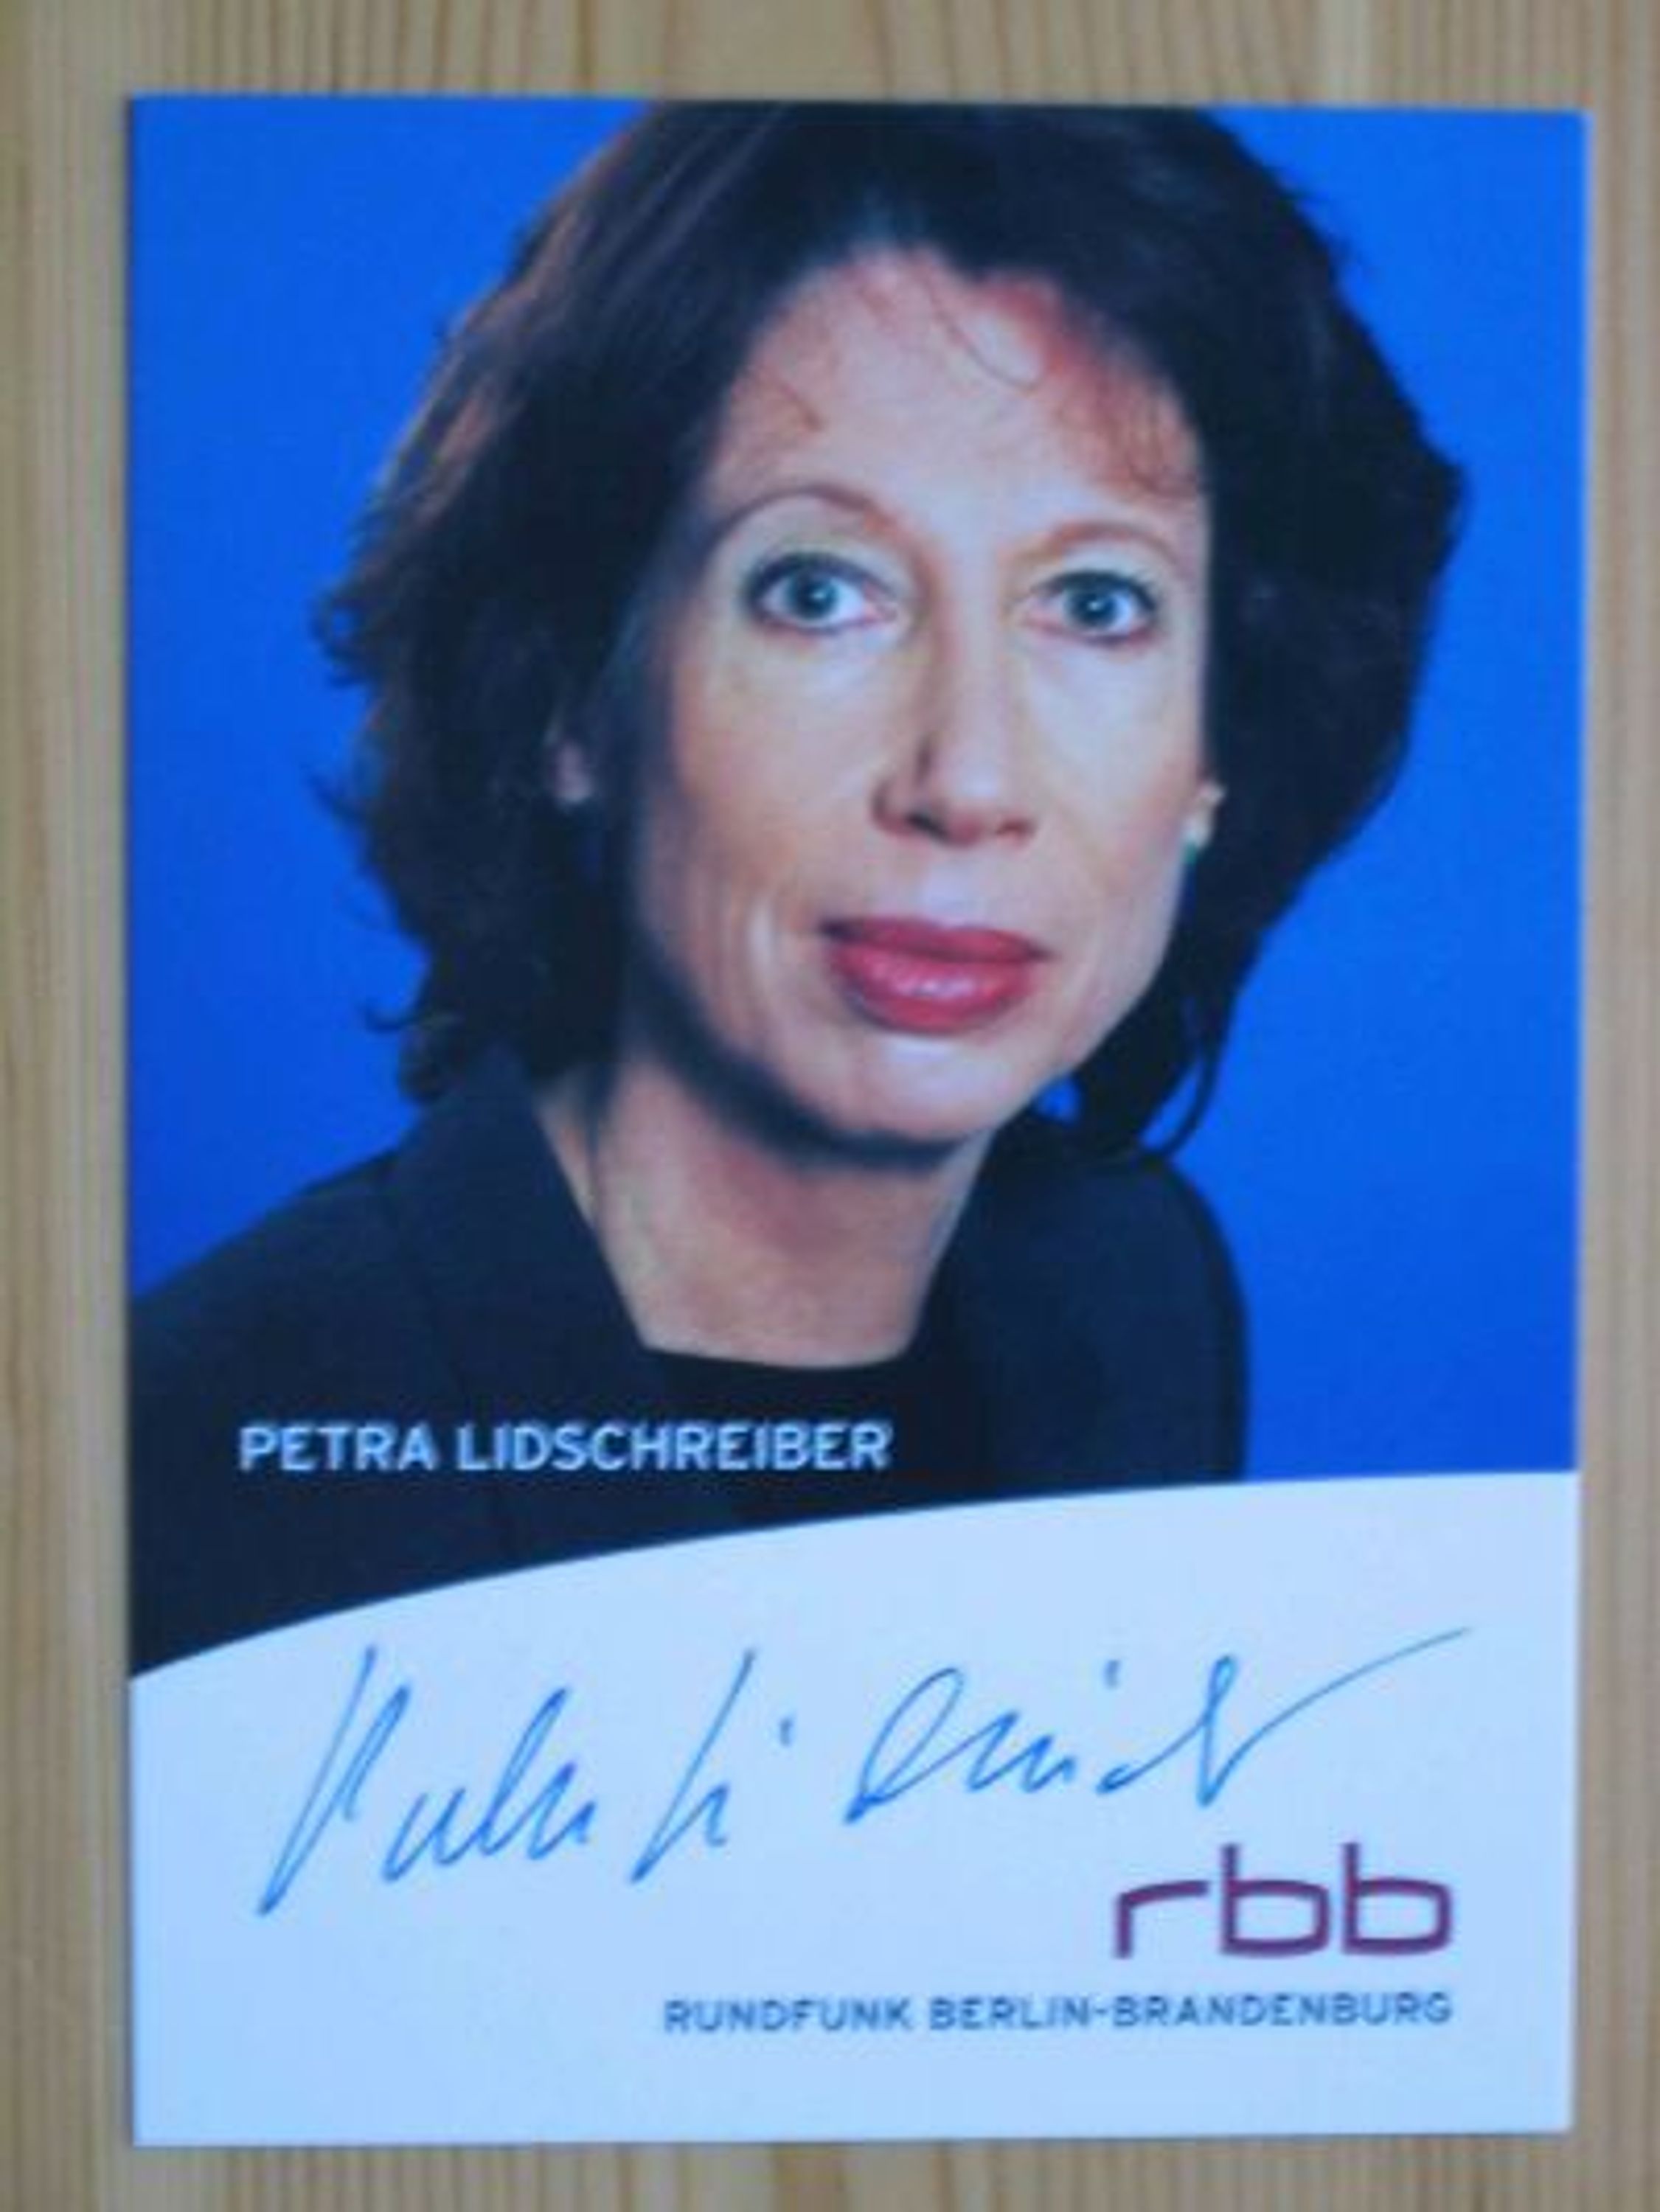 RBB Fernsehmoderator Petra Lidschreiber - Autogramm! gebraucht kaufen bei ...